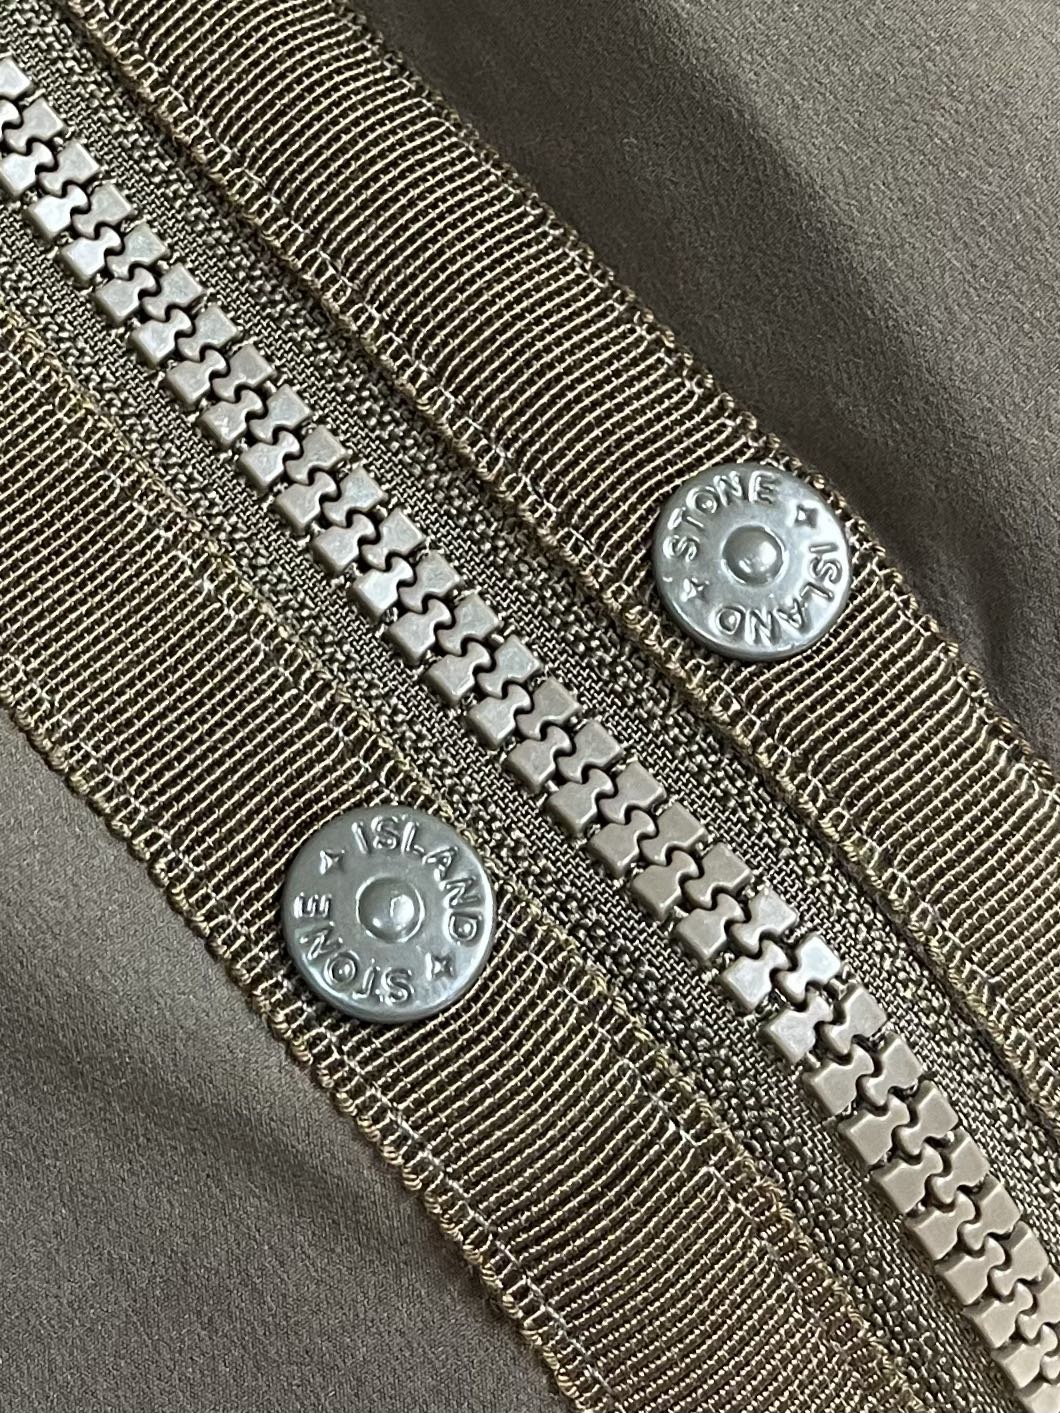 stoneisland石头岛新款立体夹克外套保持着一贯低调且硬汉的风格简洁且个性原厂工艺加工定制辅料配件